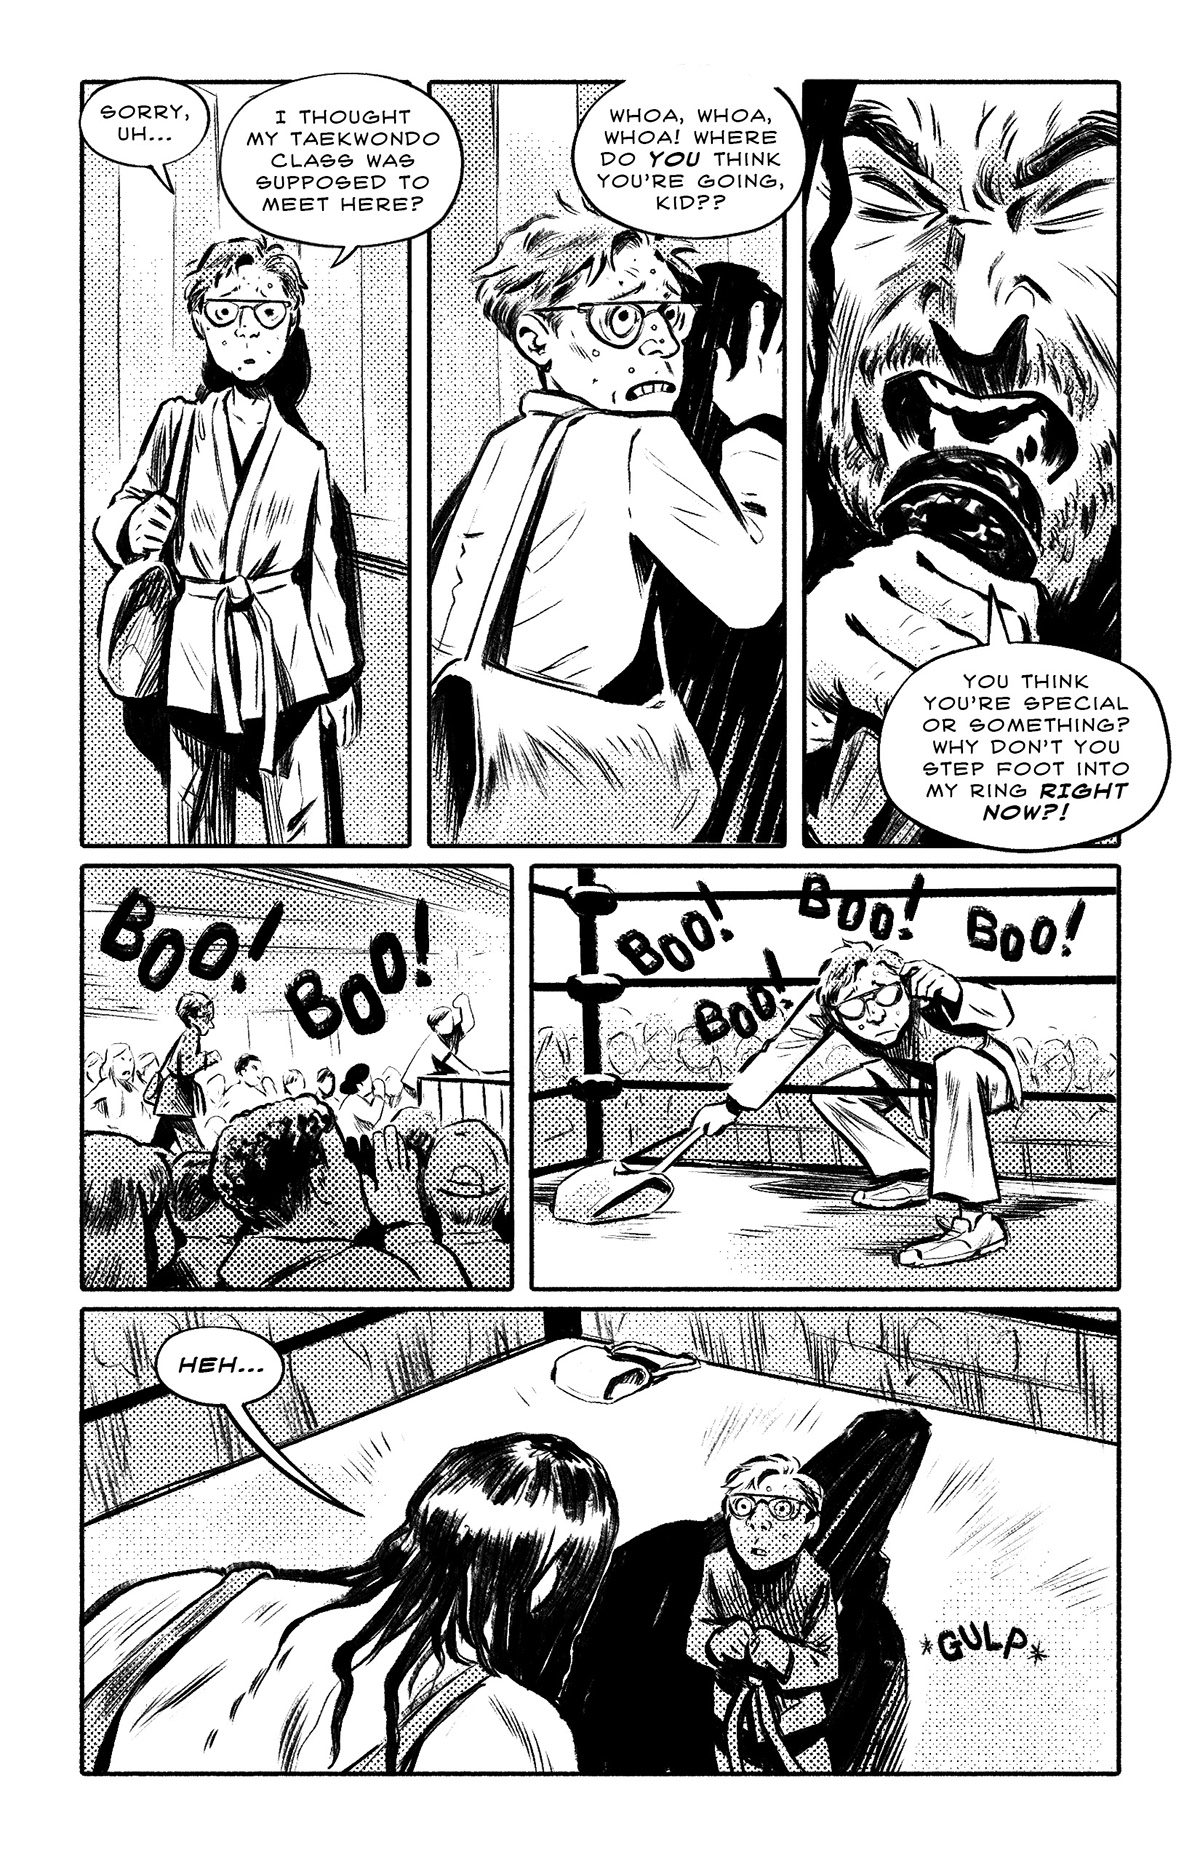 comic comics comic art Sequential Art Comic Book narrative narrative illustration